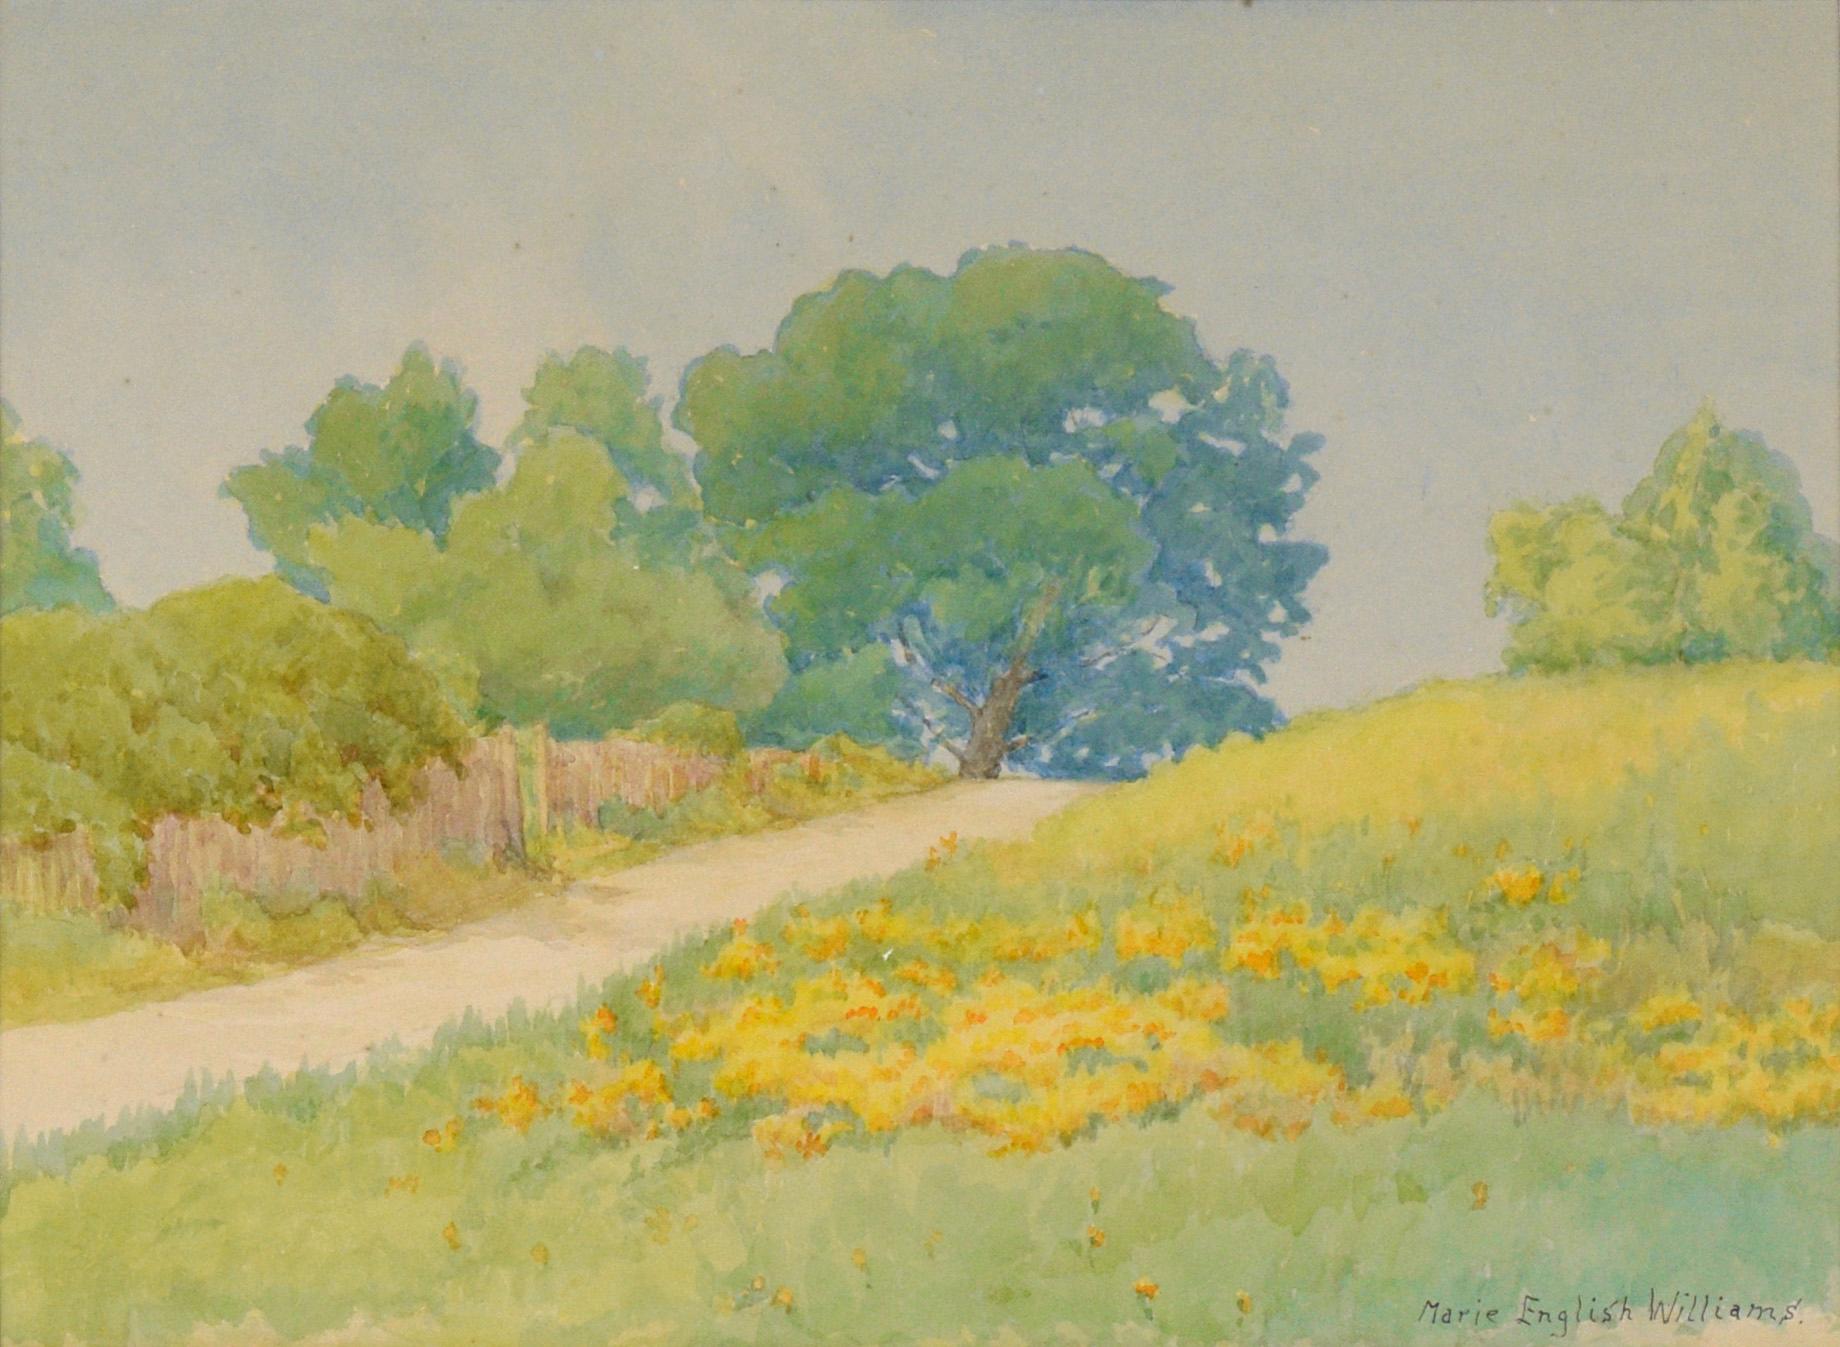 Paysage rural en Californie en peupliers dorés et chênes bleus - Aquarelle sur papier - Art de Marie English Williams